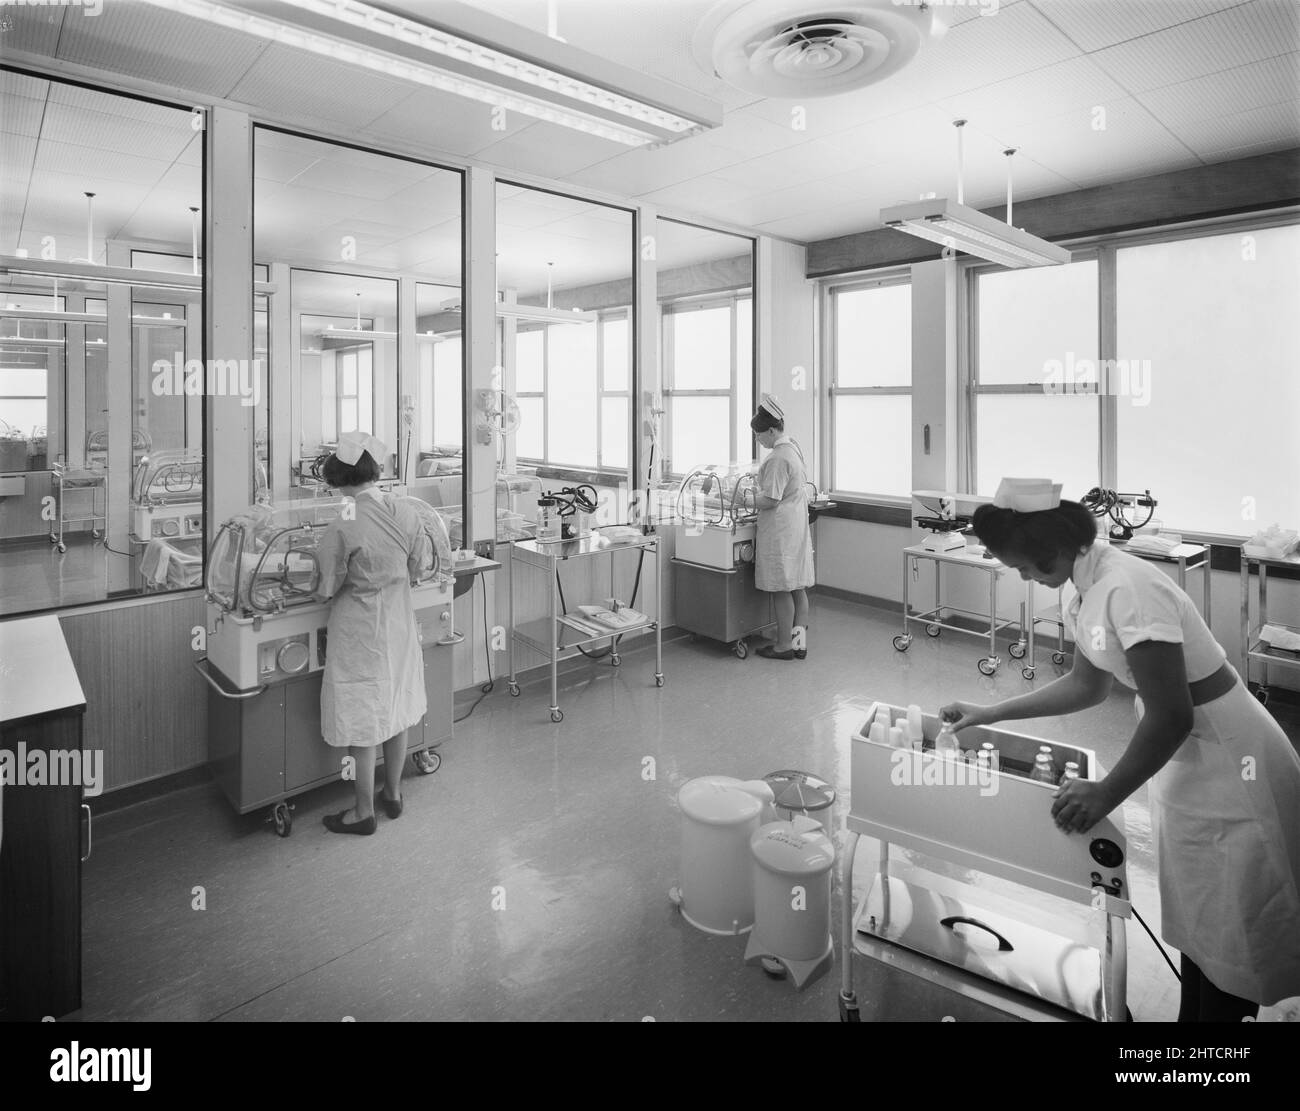 Walsgrave Hospital, Clifford Bridge Road, Walsgrave on Sowe, Coventry, West Midlands, 17/03/1967. Deux infirmières ont tendance à faire des bébés dans des incubateurs, tandis qu'une troisième inspecte un chariot de bouteilles de lait dans l'unité d'après-soins de l'hôpital Walsgrave. Banque D'Images